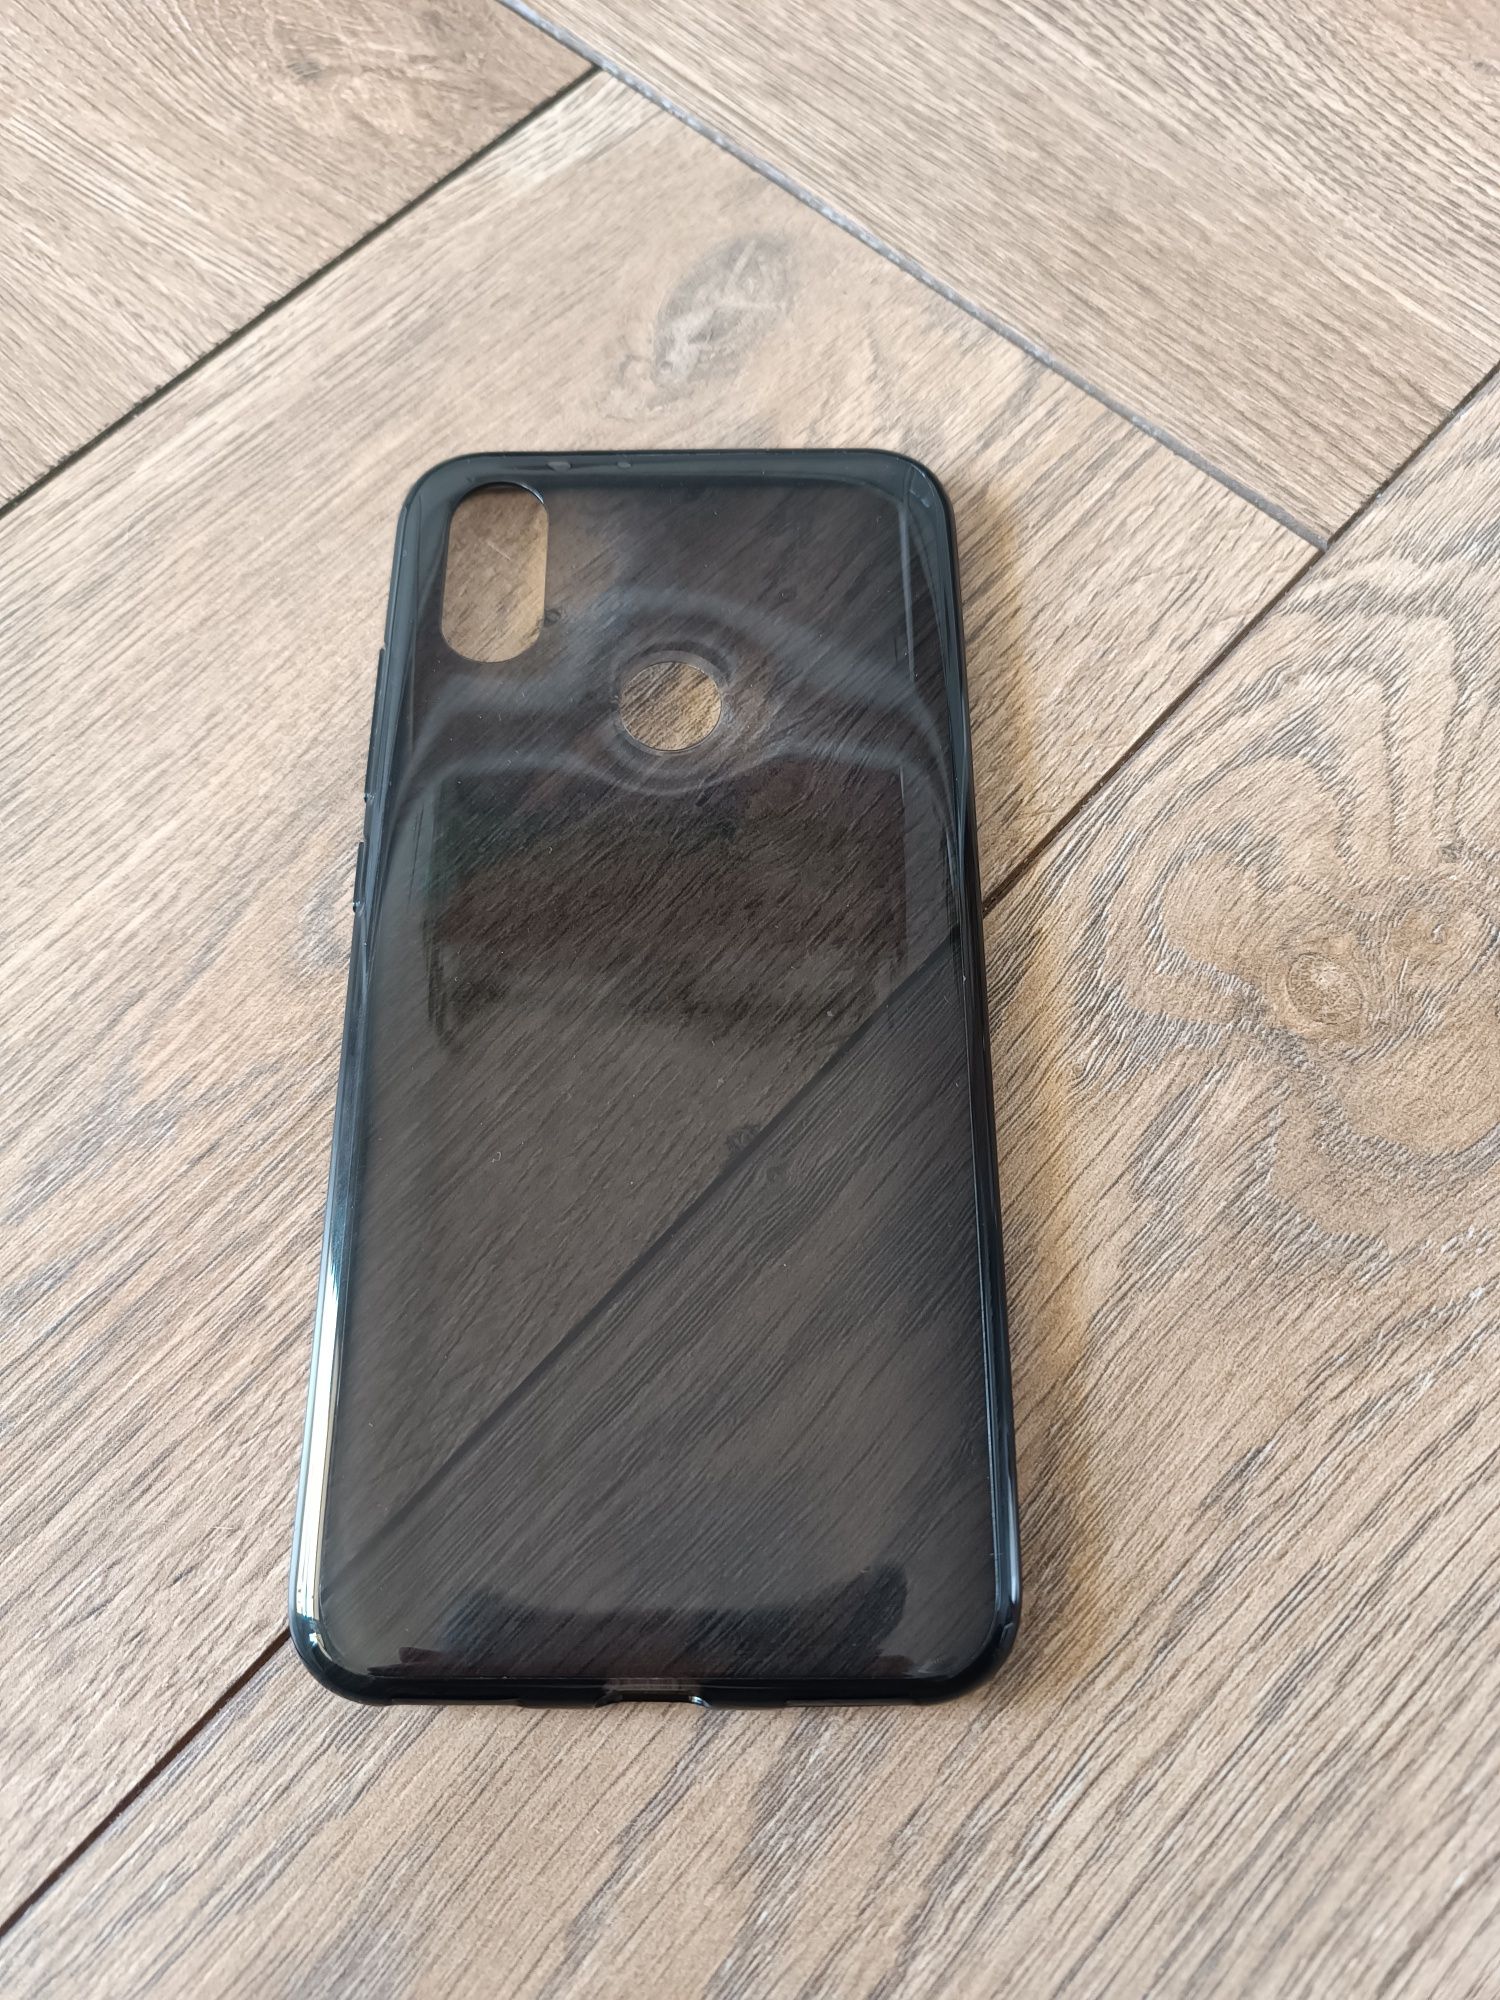 Oryginalny czarny case i ring do telefonu Xiaomi 6X